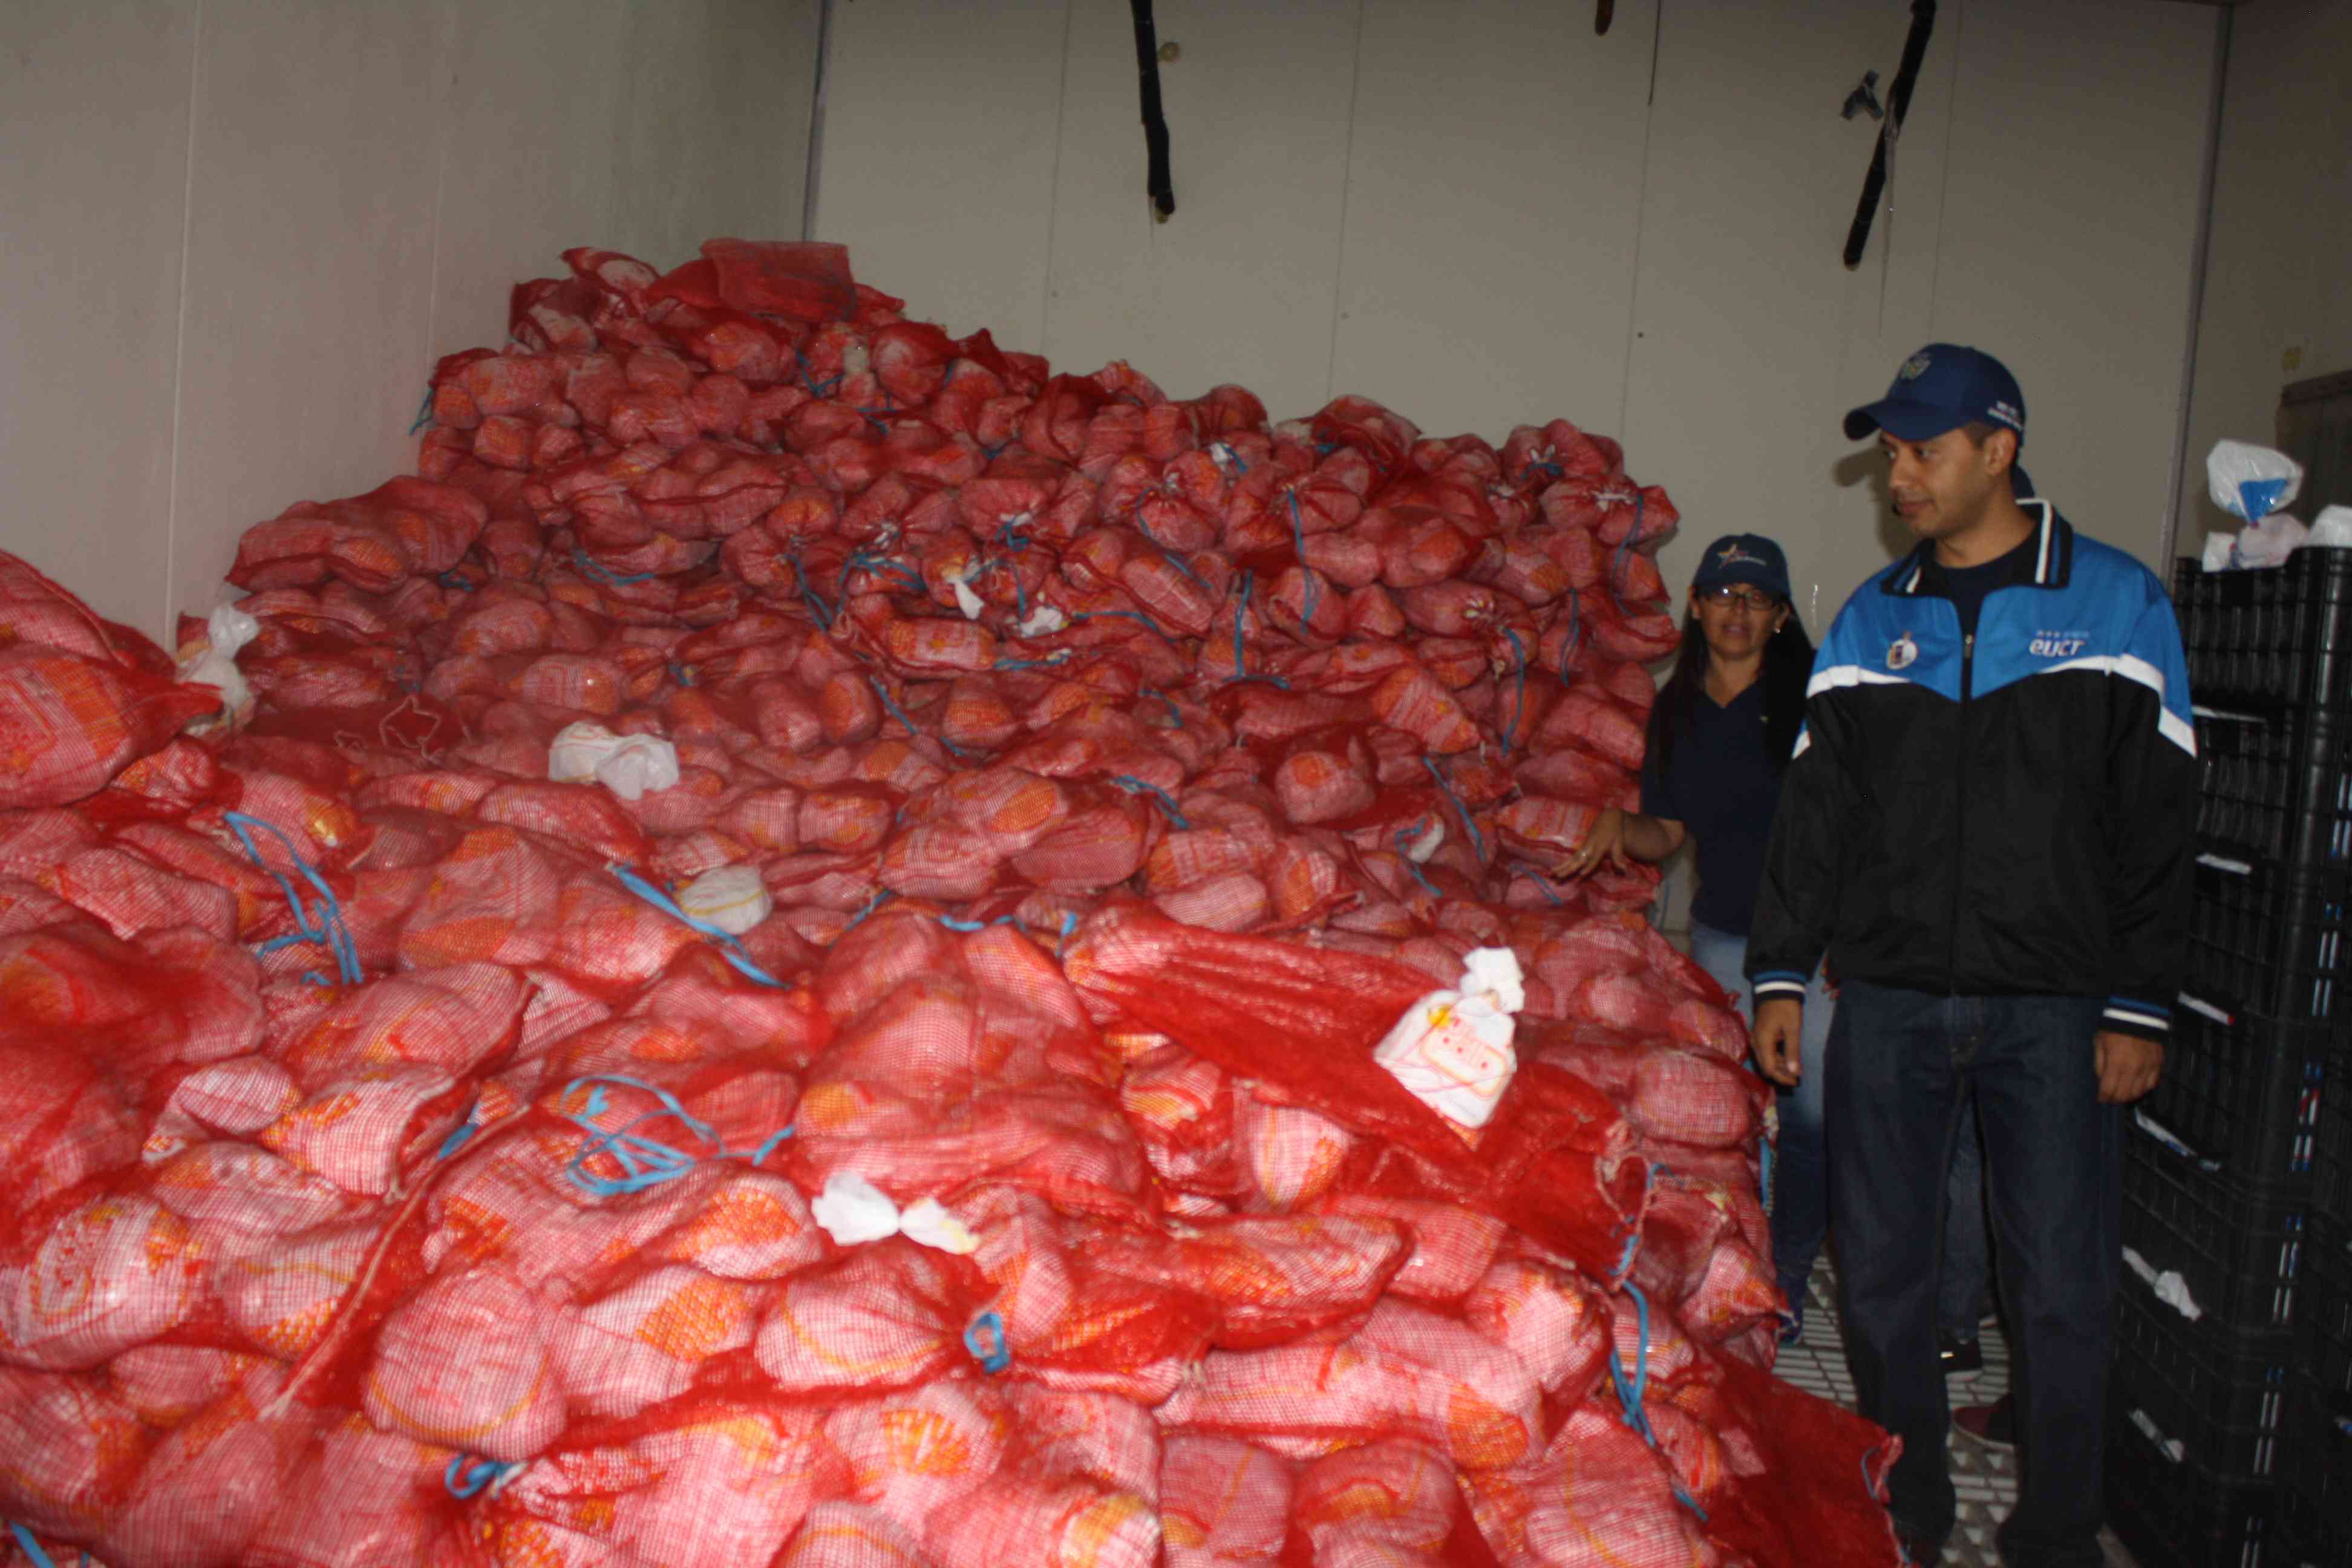 Guerra económica: Decomisan toneladas de pollo en empresa y sancionan farmacia en Venezuela